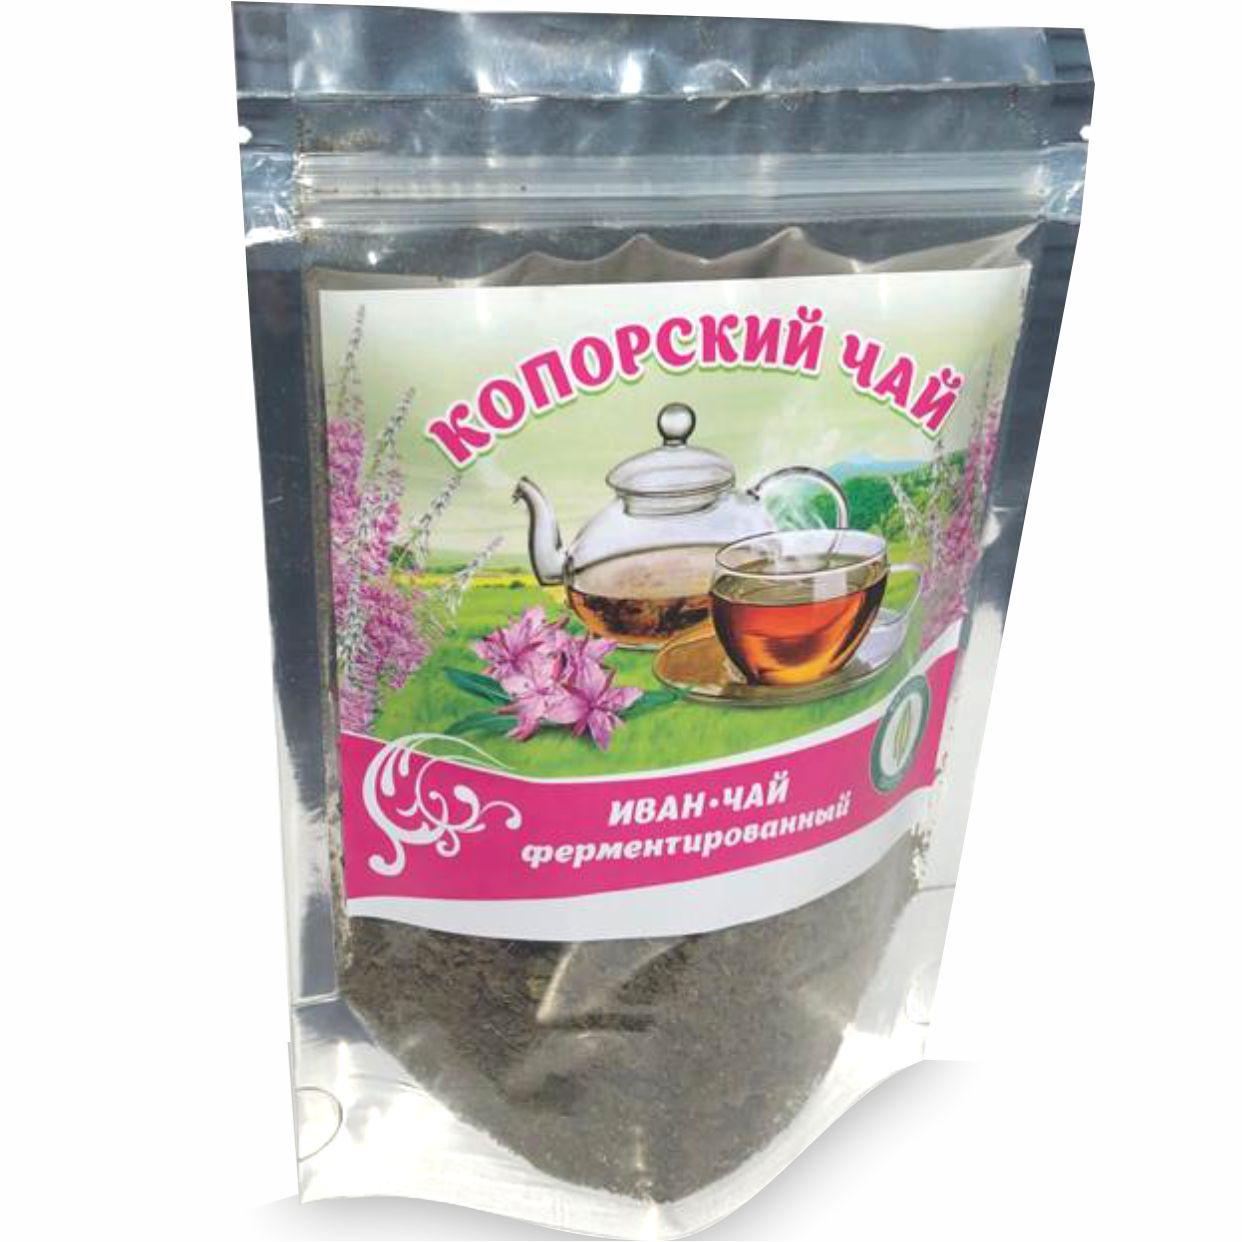 Копорский иван-чай ферментированный, 50 г